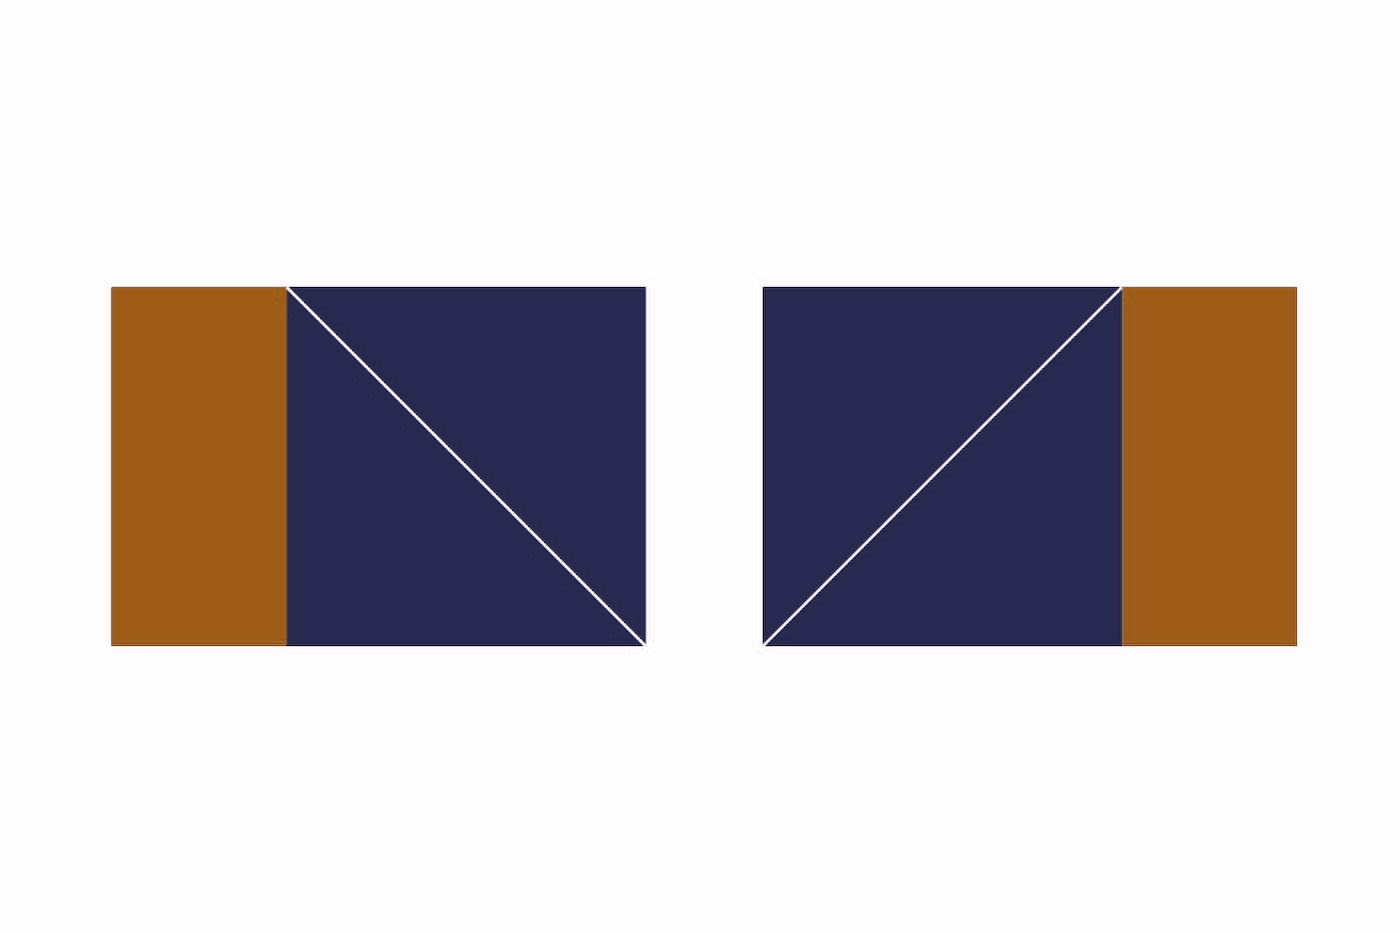 étape du schéma d'assemblage de la courtepointe, forme géométrique avec carrés et triangles bleu marine et cuivre